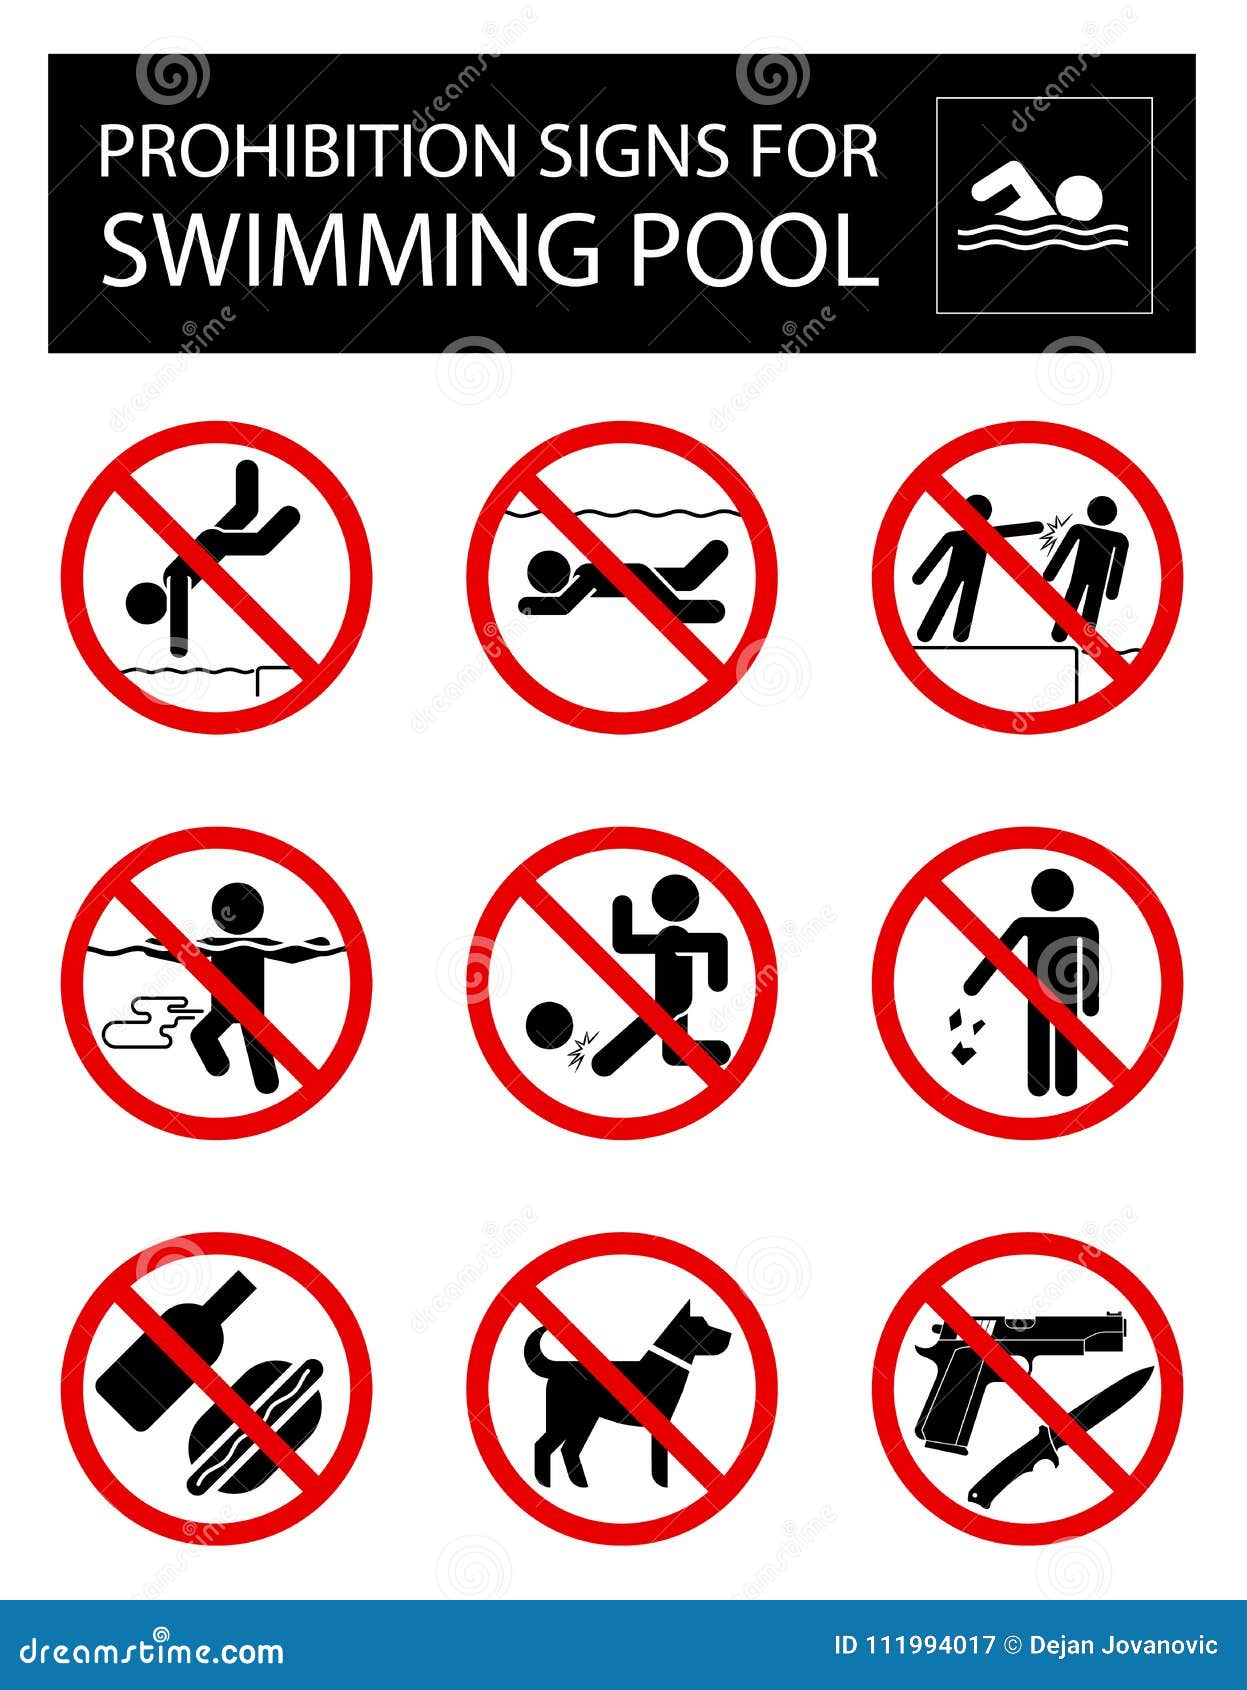 Условные знаки чтобы не было воды. Запрещающие таблички в бассейне. Знаки поведения в бассейне. Запретные знаки в бассейне. Запрещающие знаки на воде.